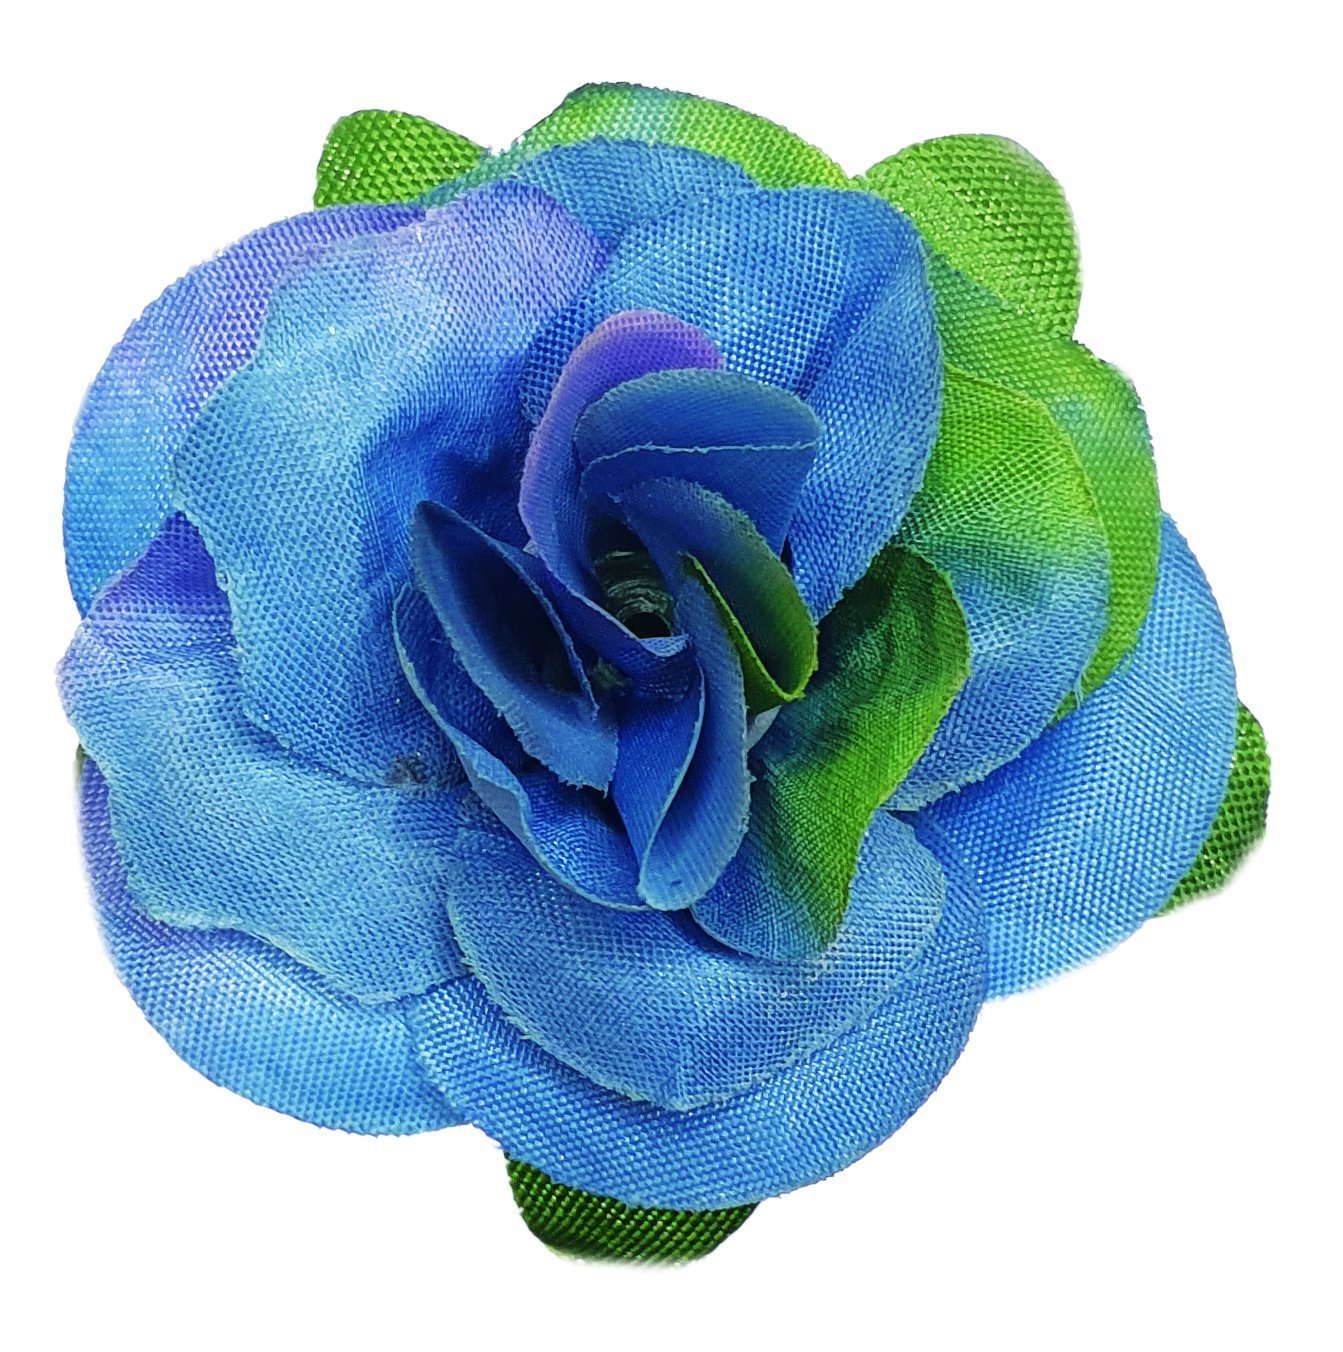 Flower Making Kit - Romantic Roses - BLUE - FF05BL